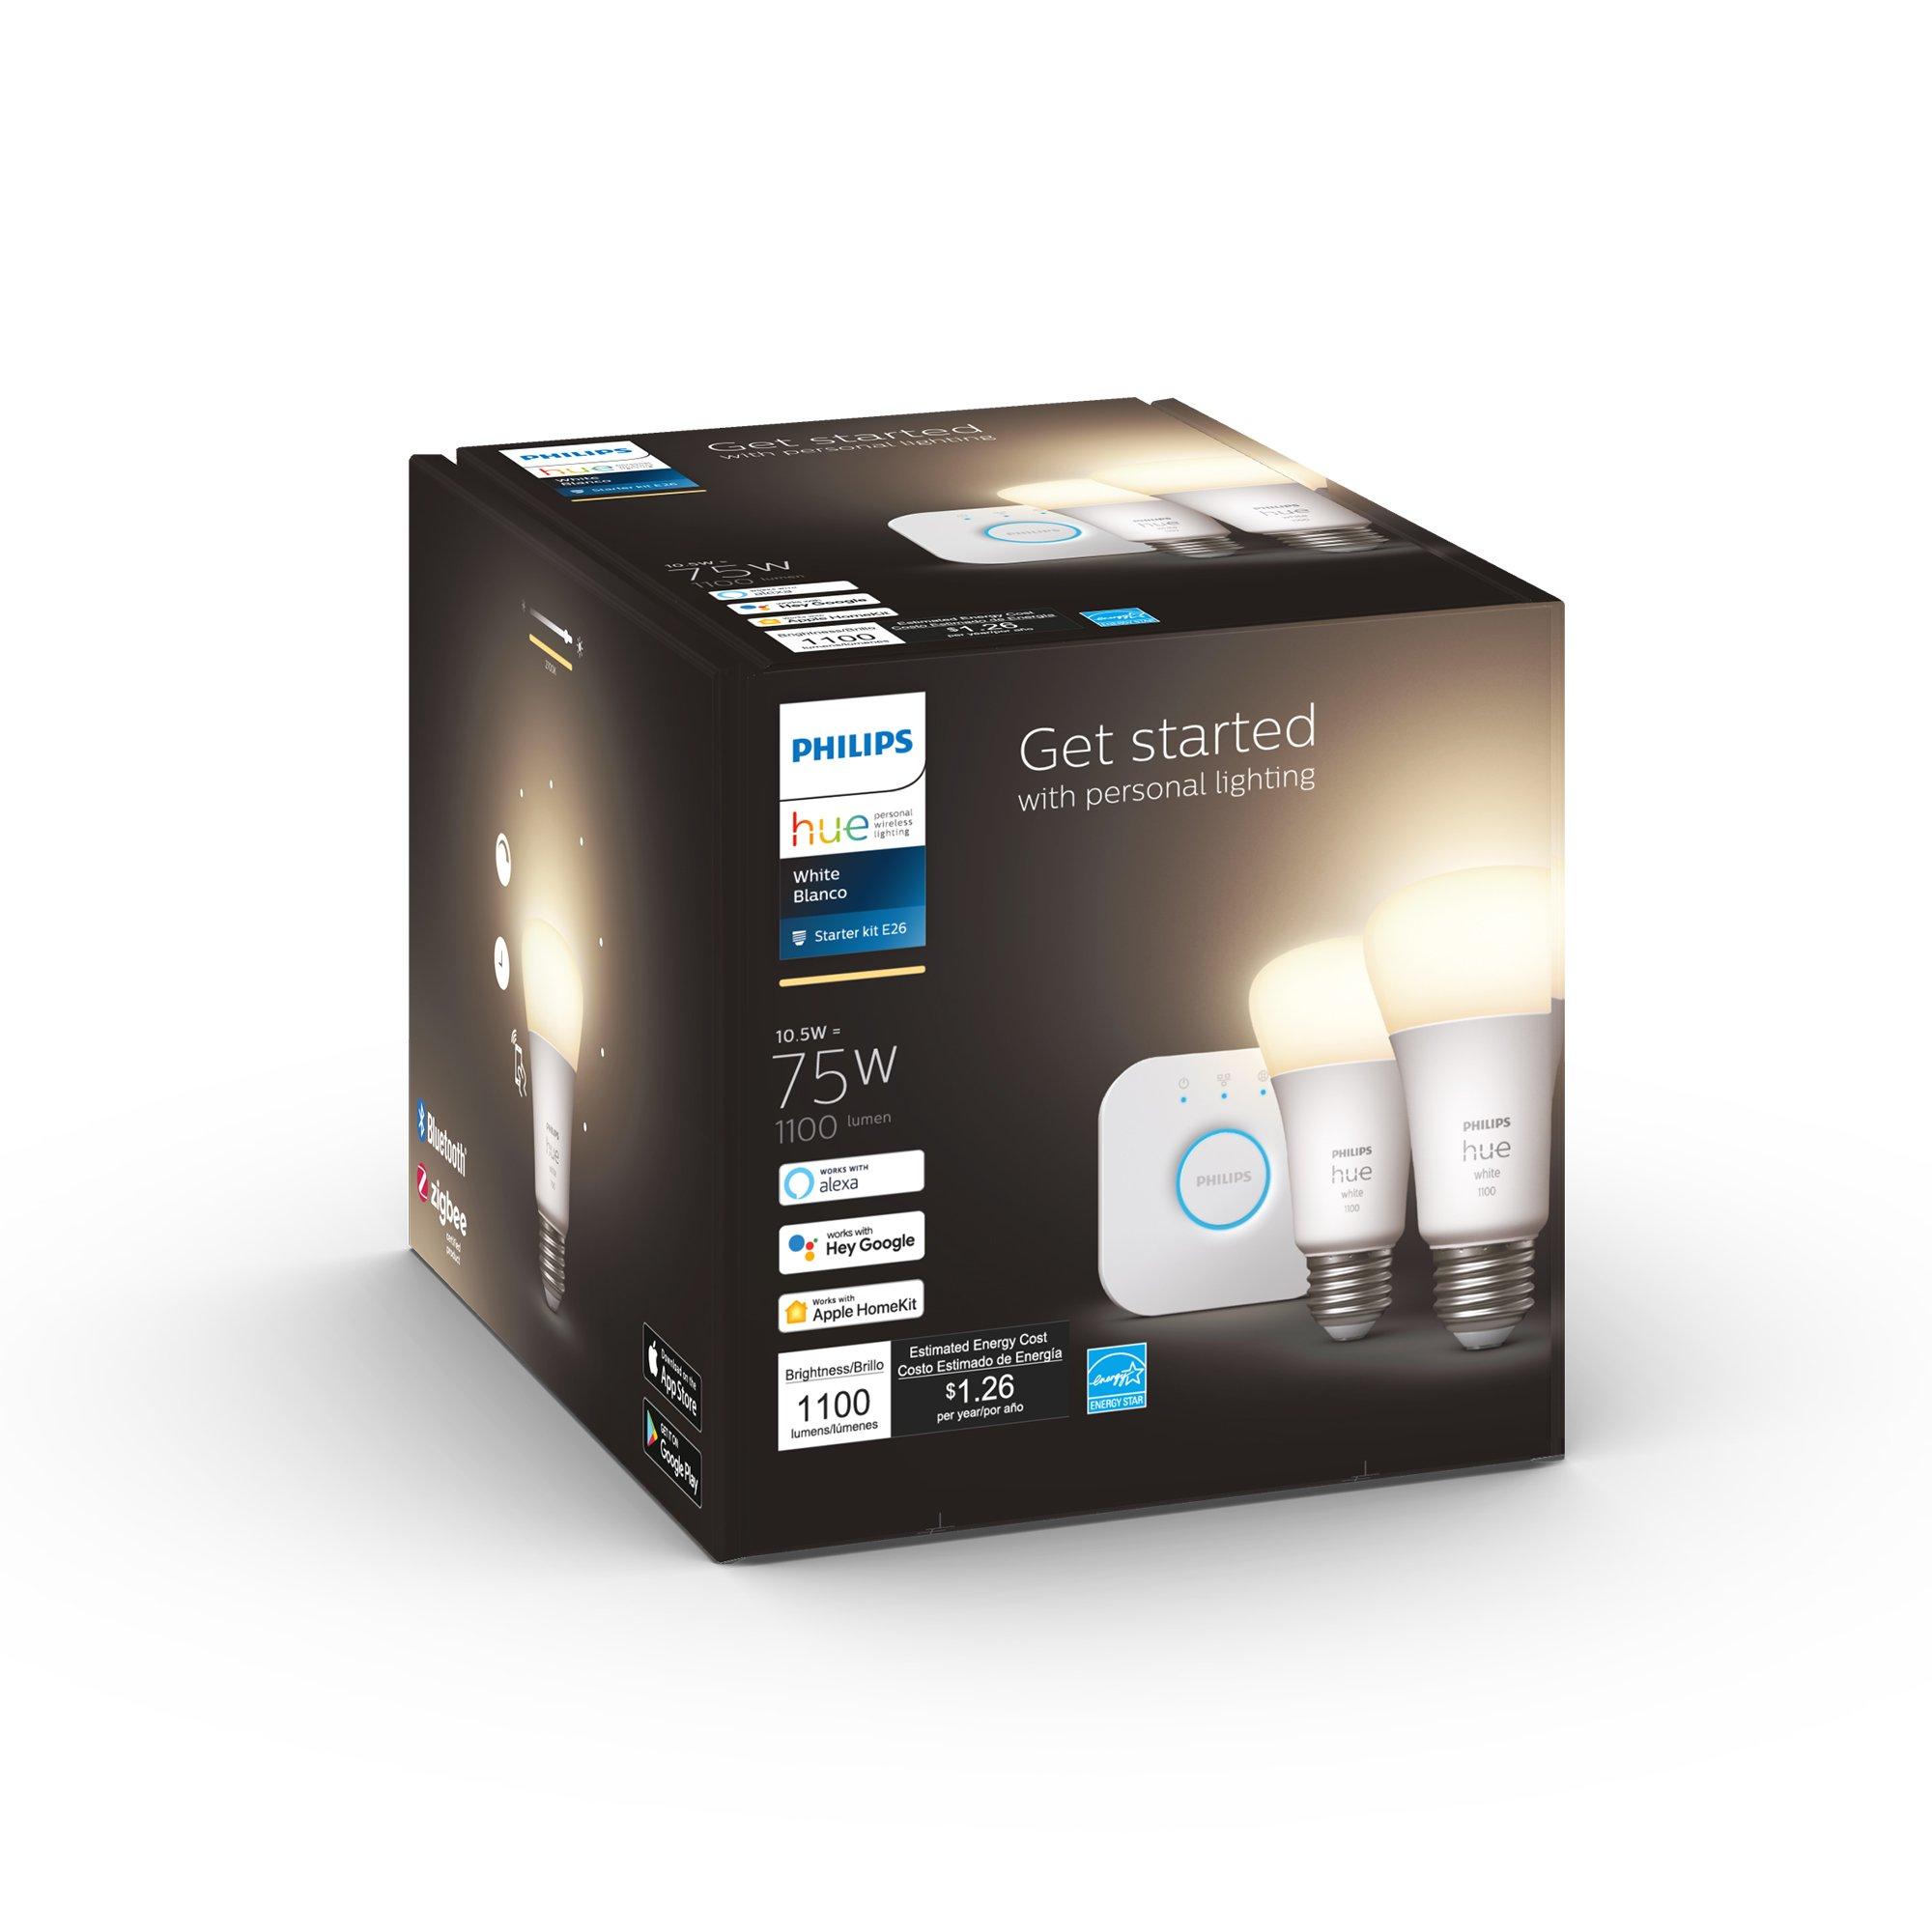 Philips Hue E26 White Bluetooth LED Smart Bulb Starter Kit